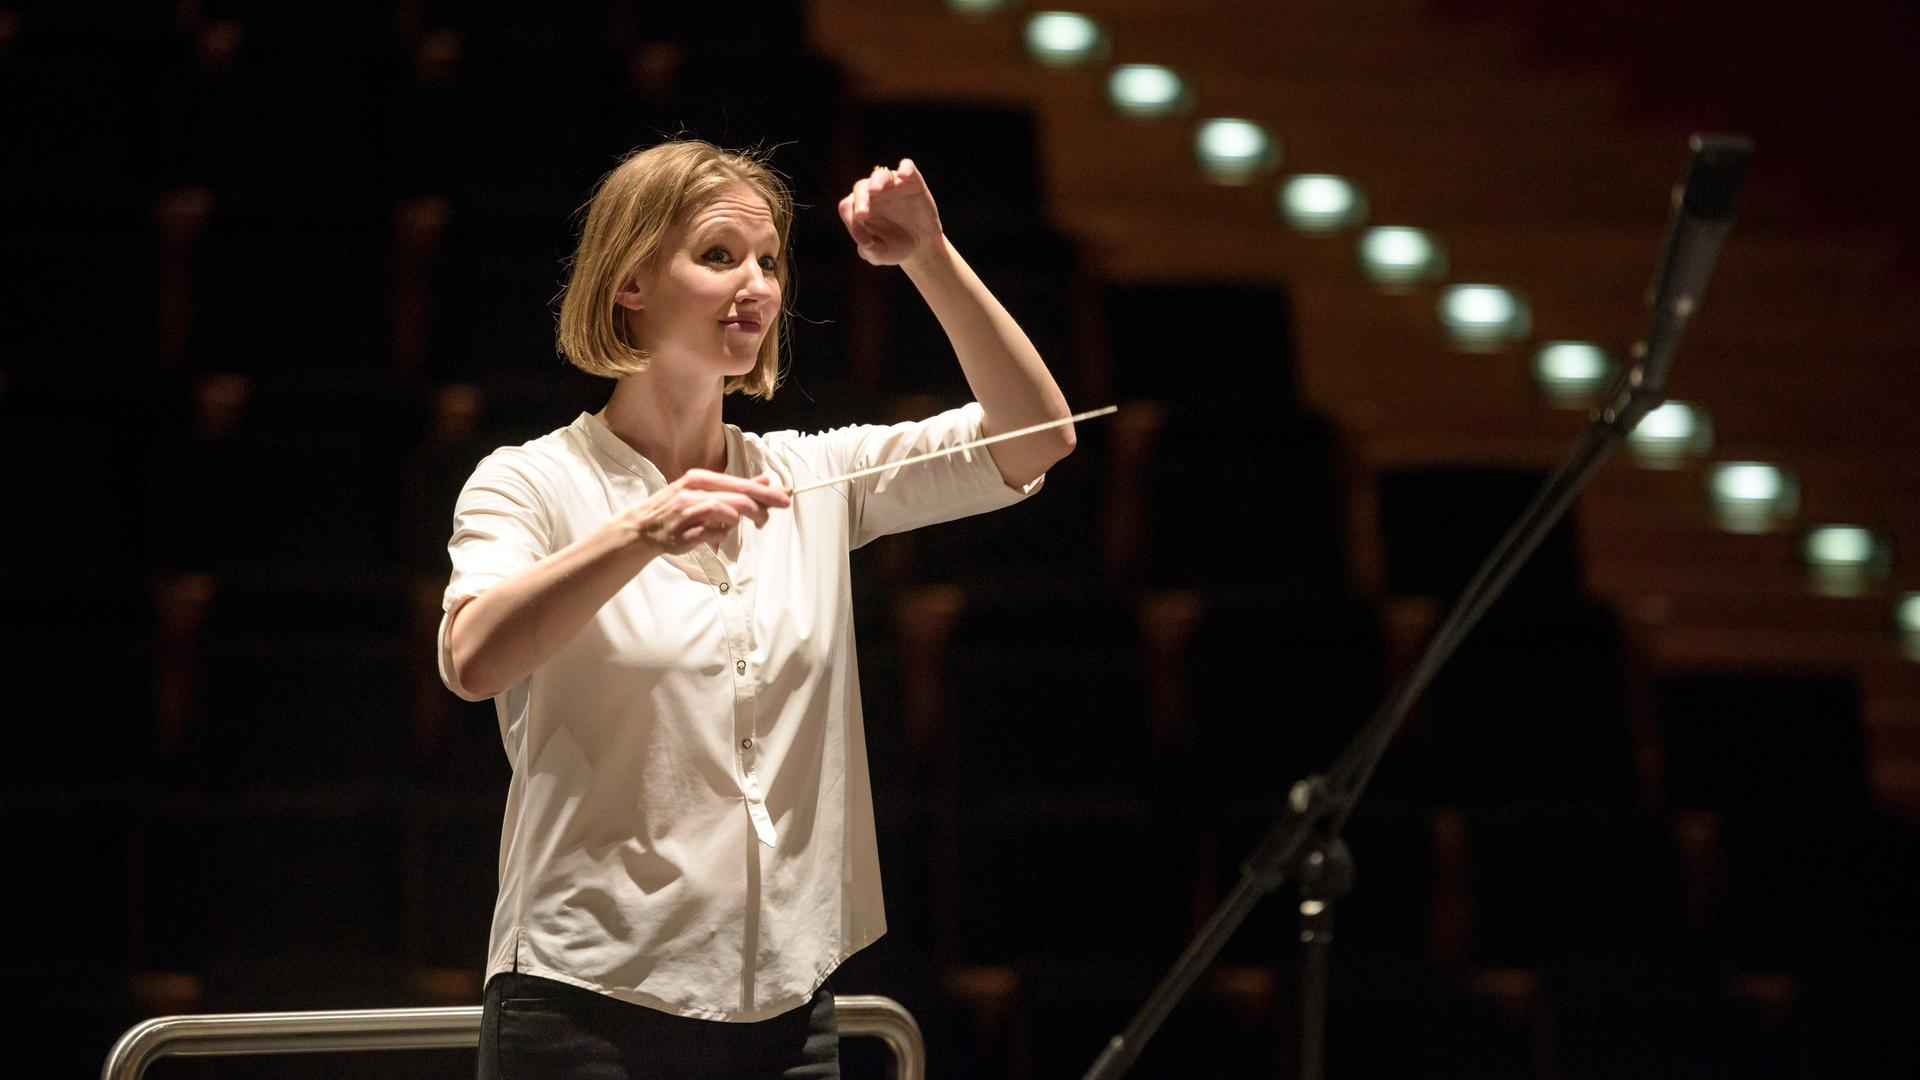 Eine junge Frau mit blonden kinnlangen Haaren blickt erwartungsvoll. Sie hat in der rechten Hand einen Taktstock, die linke hebt sie, um dem Orchester ein Zeichen zu geben. Es ist die Dirigentin Joana Mallwitz.